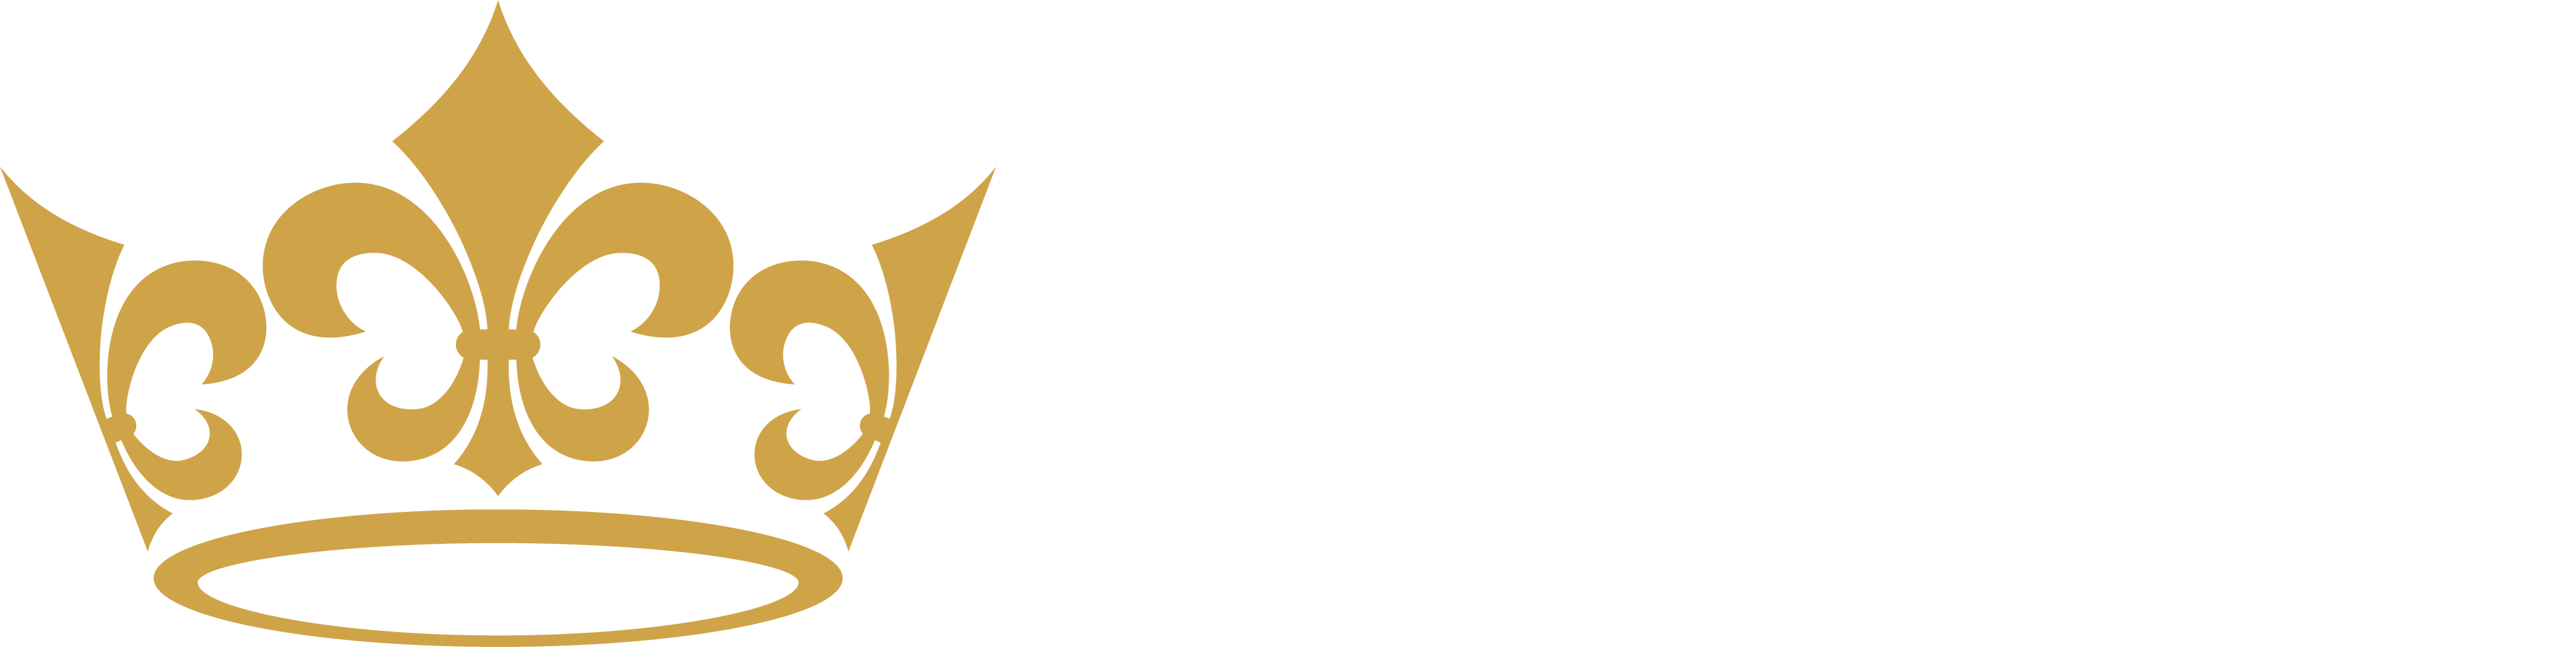 Tavex - Złoto inwestycyjne, srebro, platyna, waluty 👑